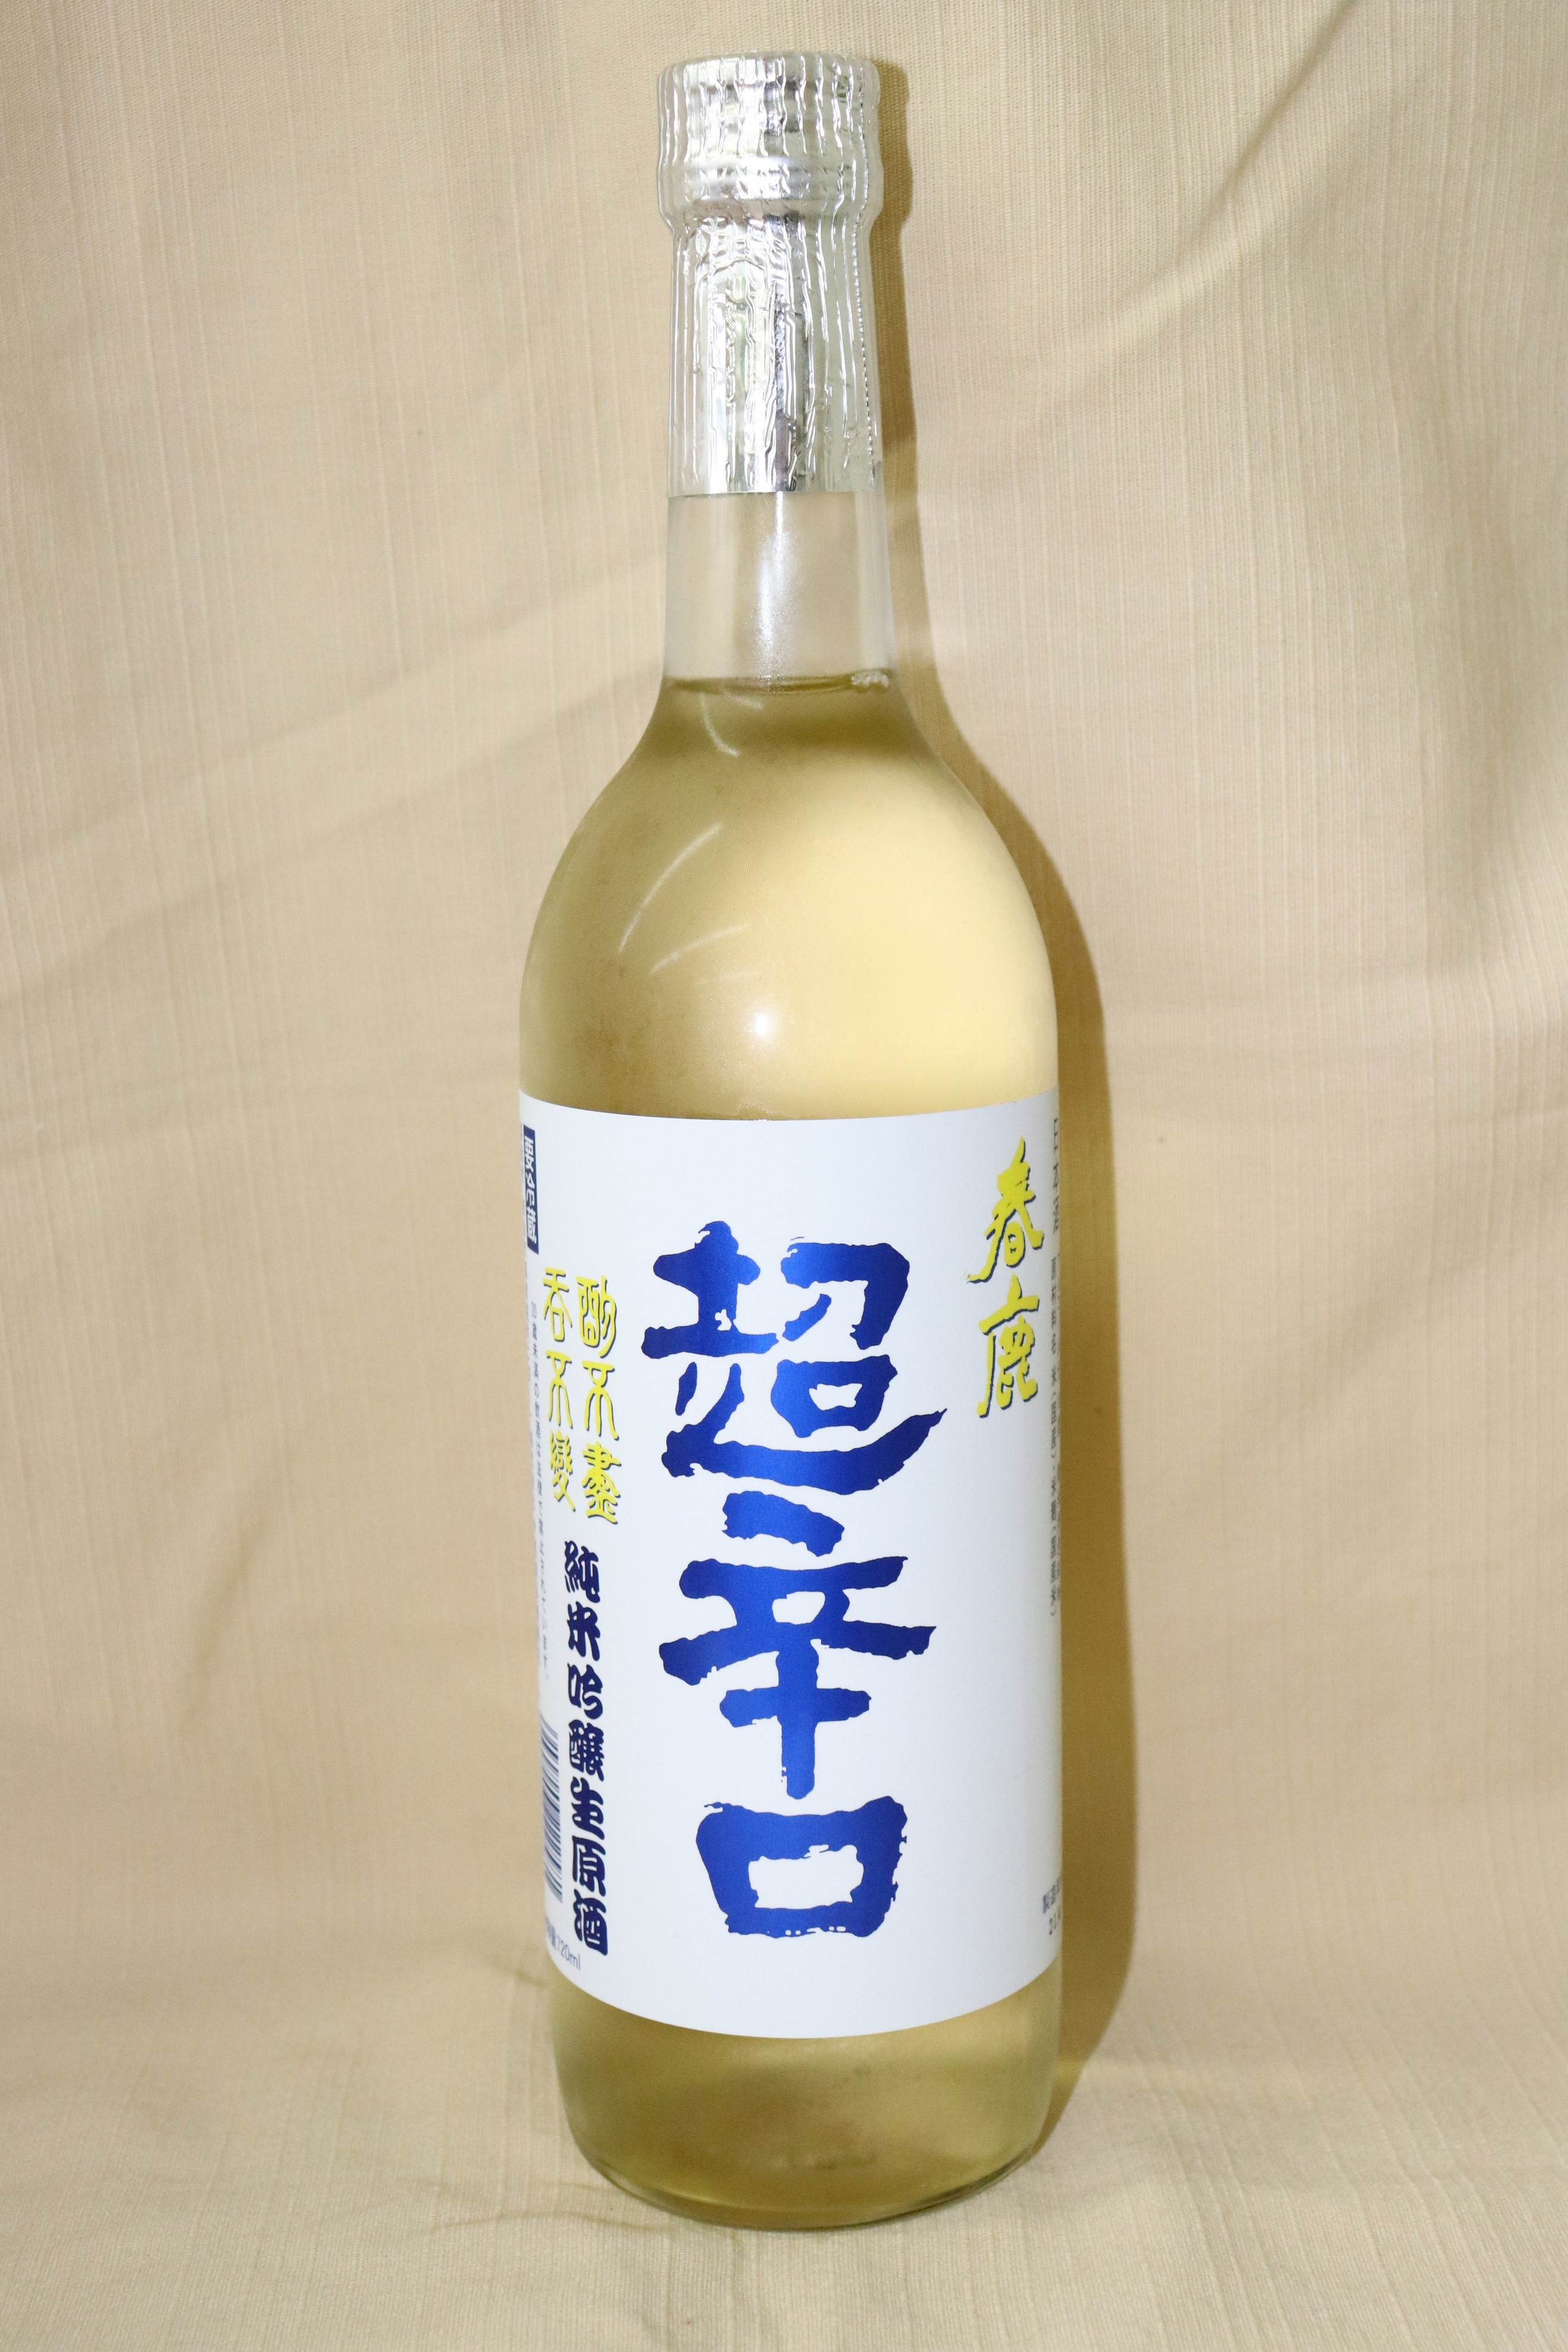 【ブログ更新】【夏酒・限定】春鹿 純米吟醸 超辛口 生原酒